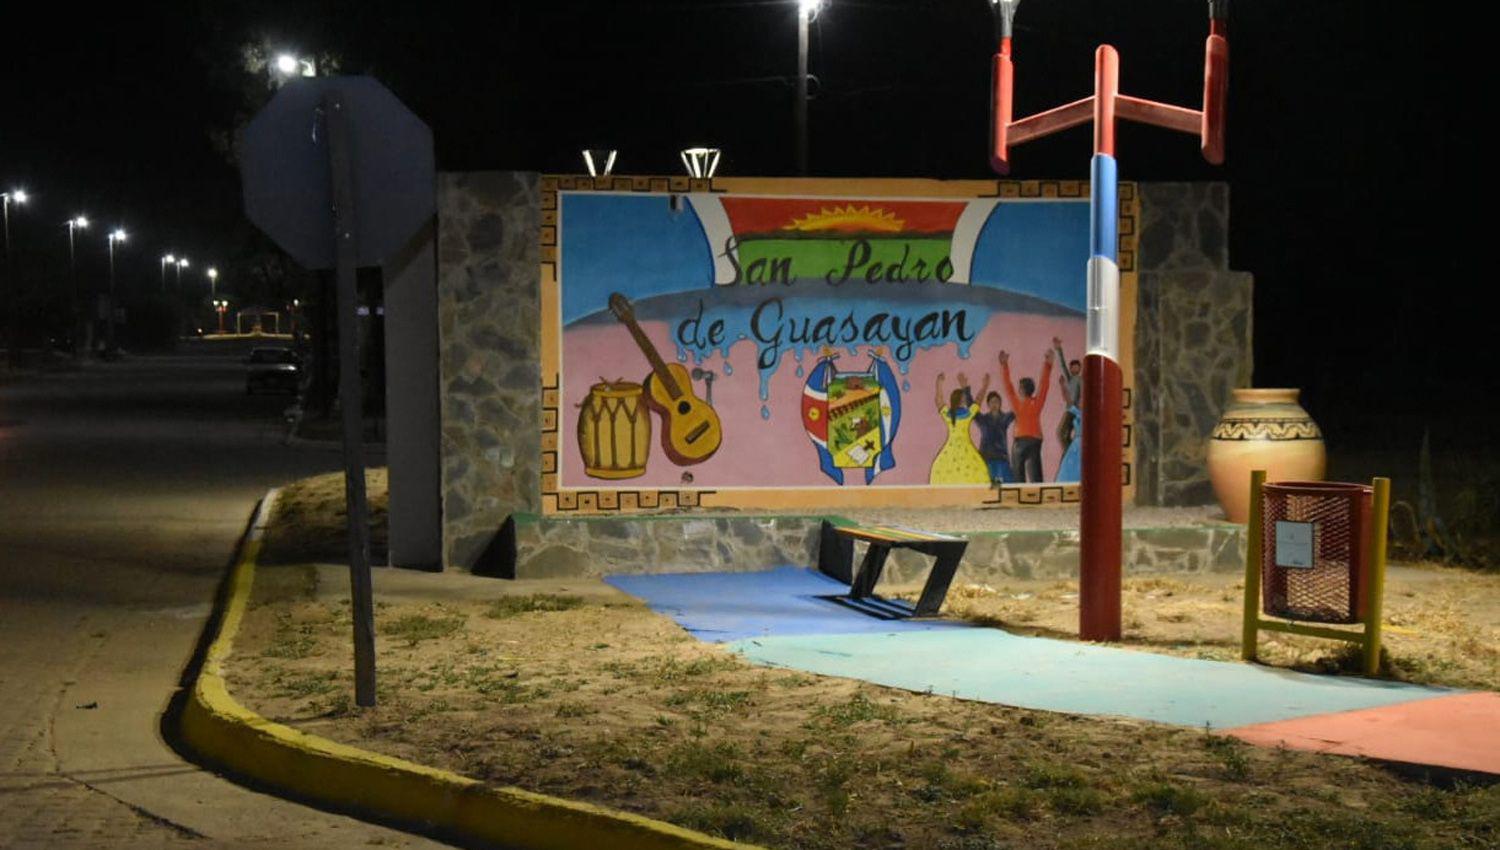 Limpiaron pintaron y pusieron en valor al acceso a San Pedro de Guasayaacuten